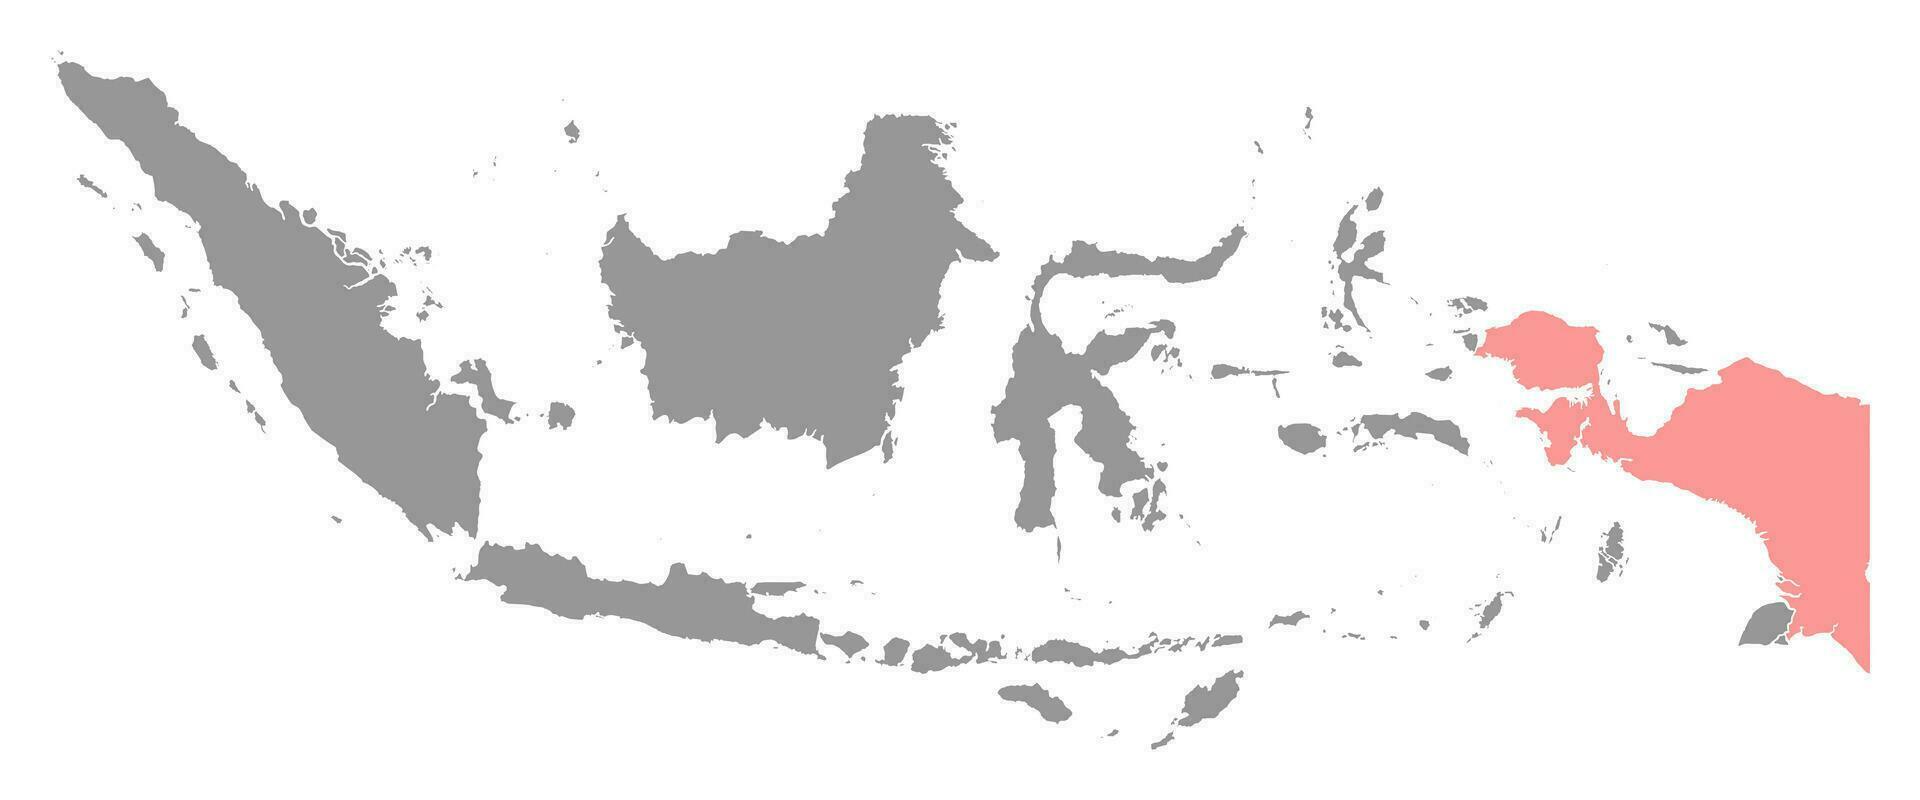 ocidental Novo Guiné mapa, região do Indonésia. vetor ilustração.